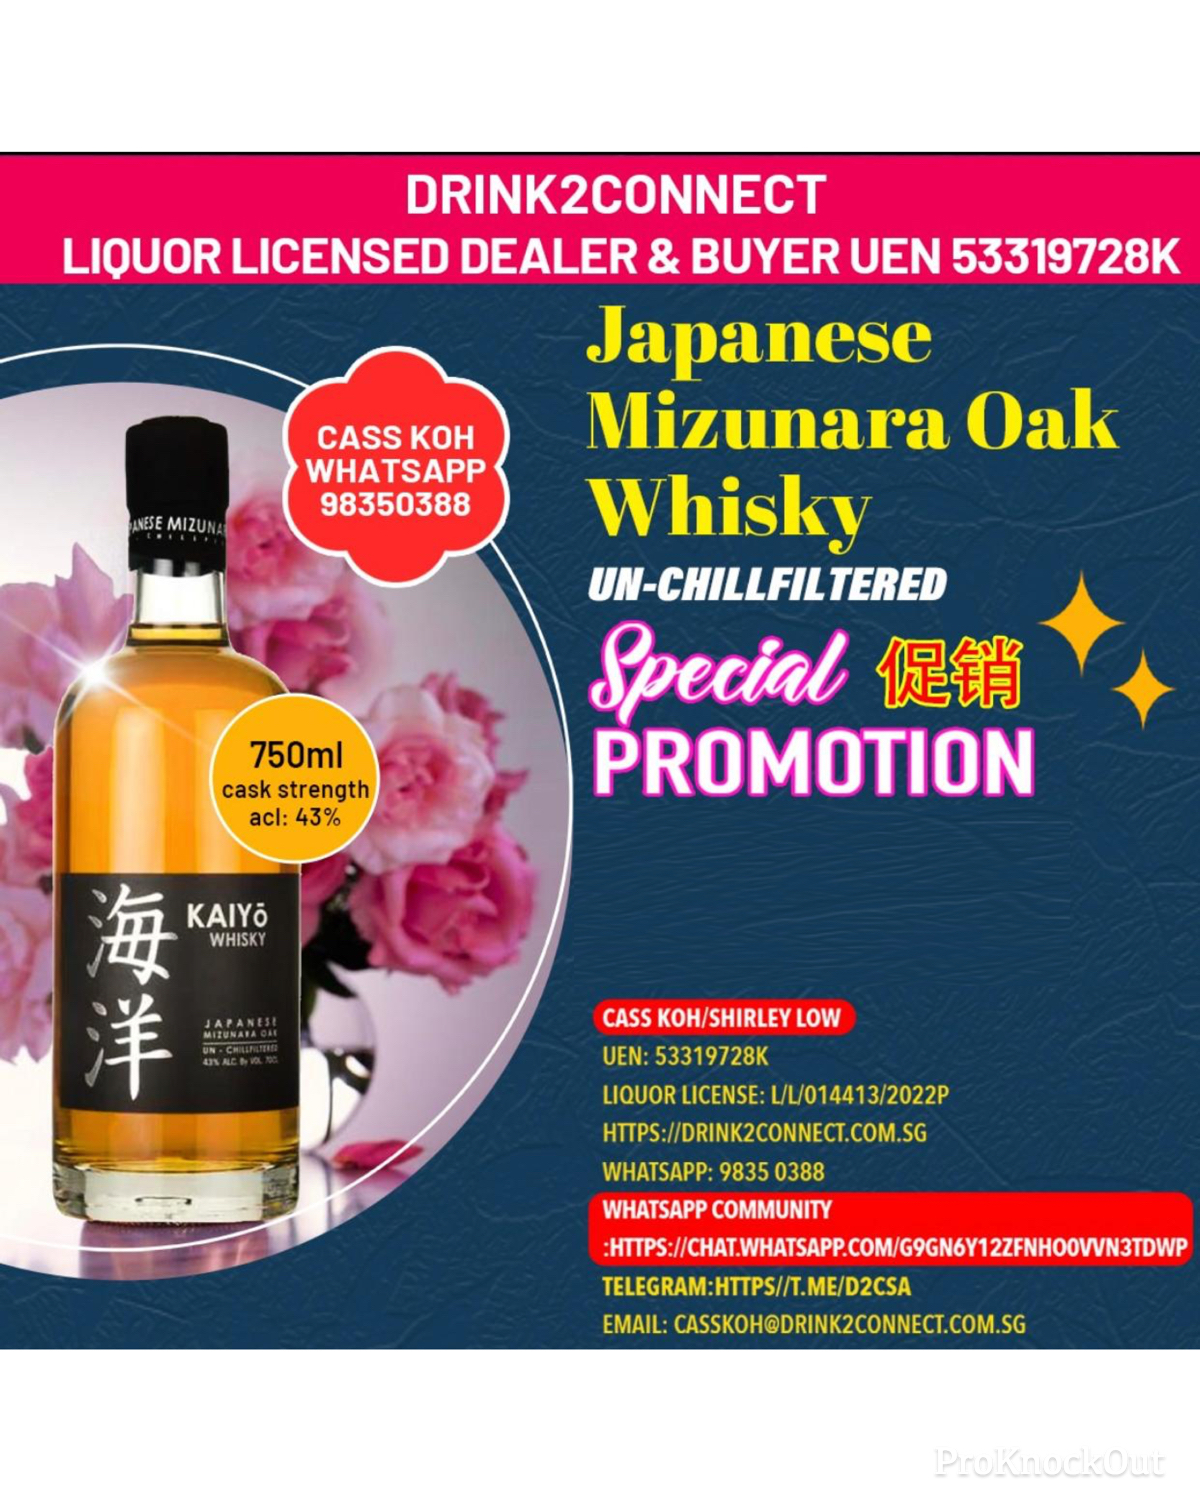 700ml Kaiyo Mizunara Oak Whisky/Japanese Whisky Sale Online/Japanese Whisky Price Online